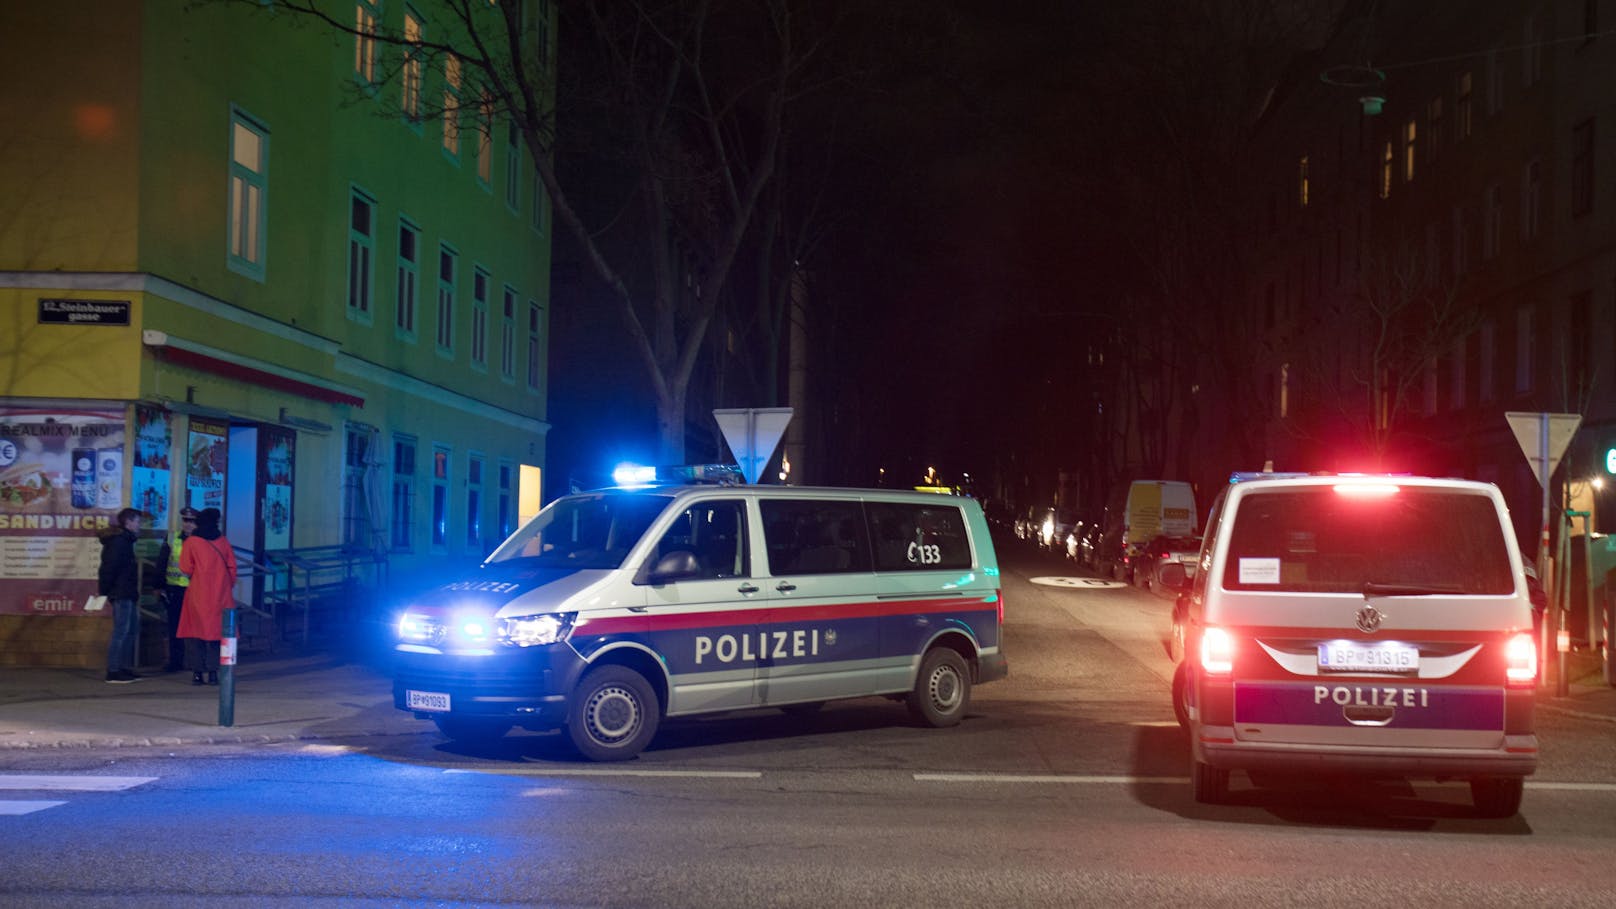 "Mein Auto!" Mann zieht in Wien plötzlich ein Messer